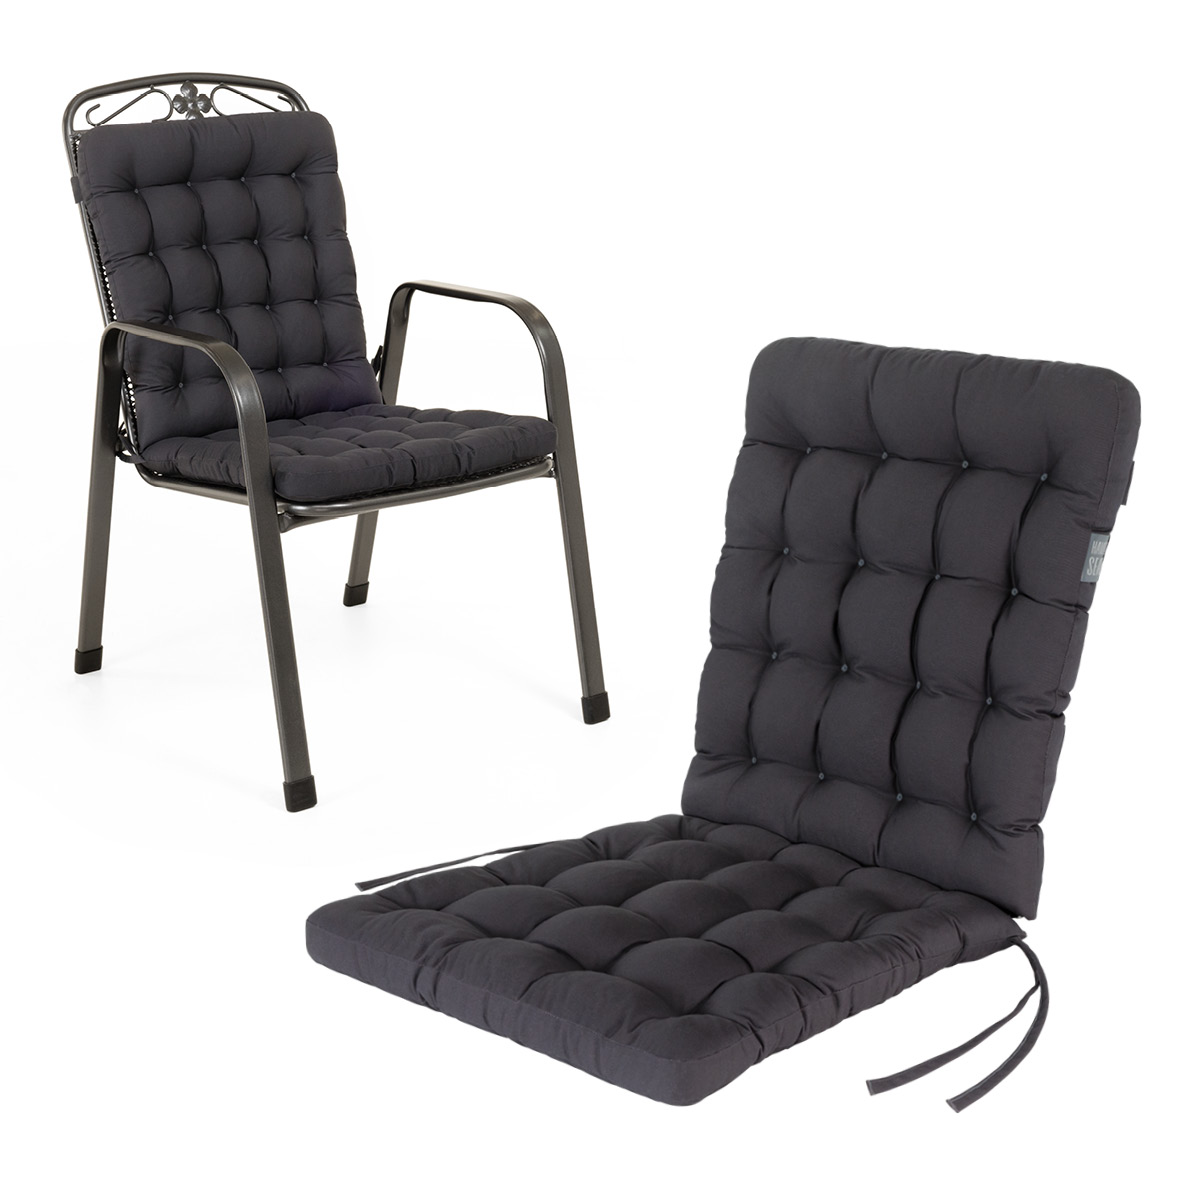 Cuscino per sedia con schienale basso 100x48 cm | Grigio / Antracite